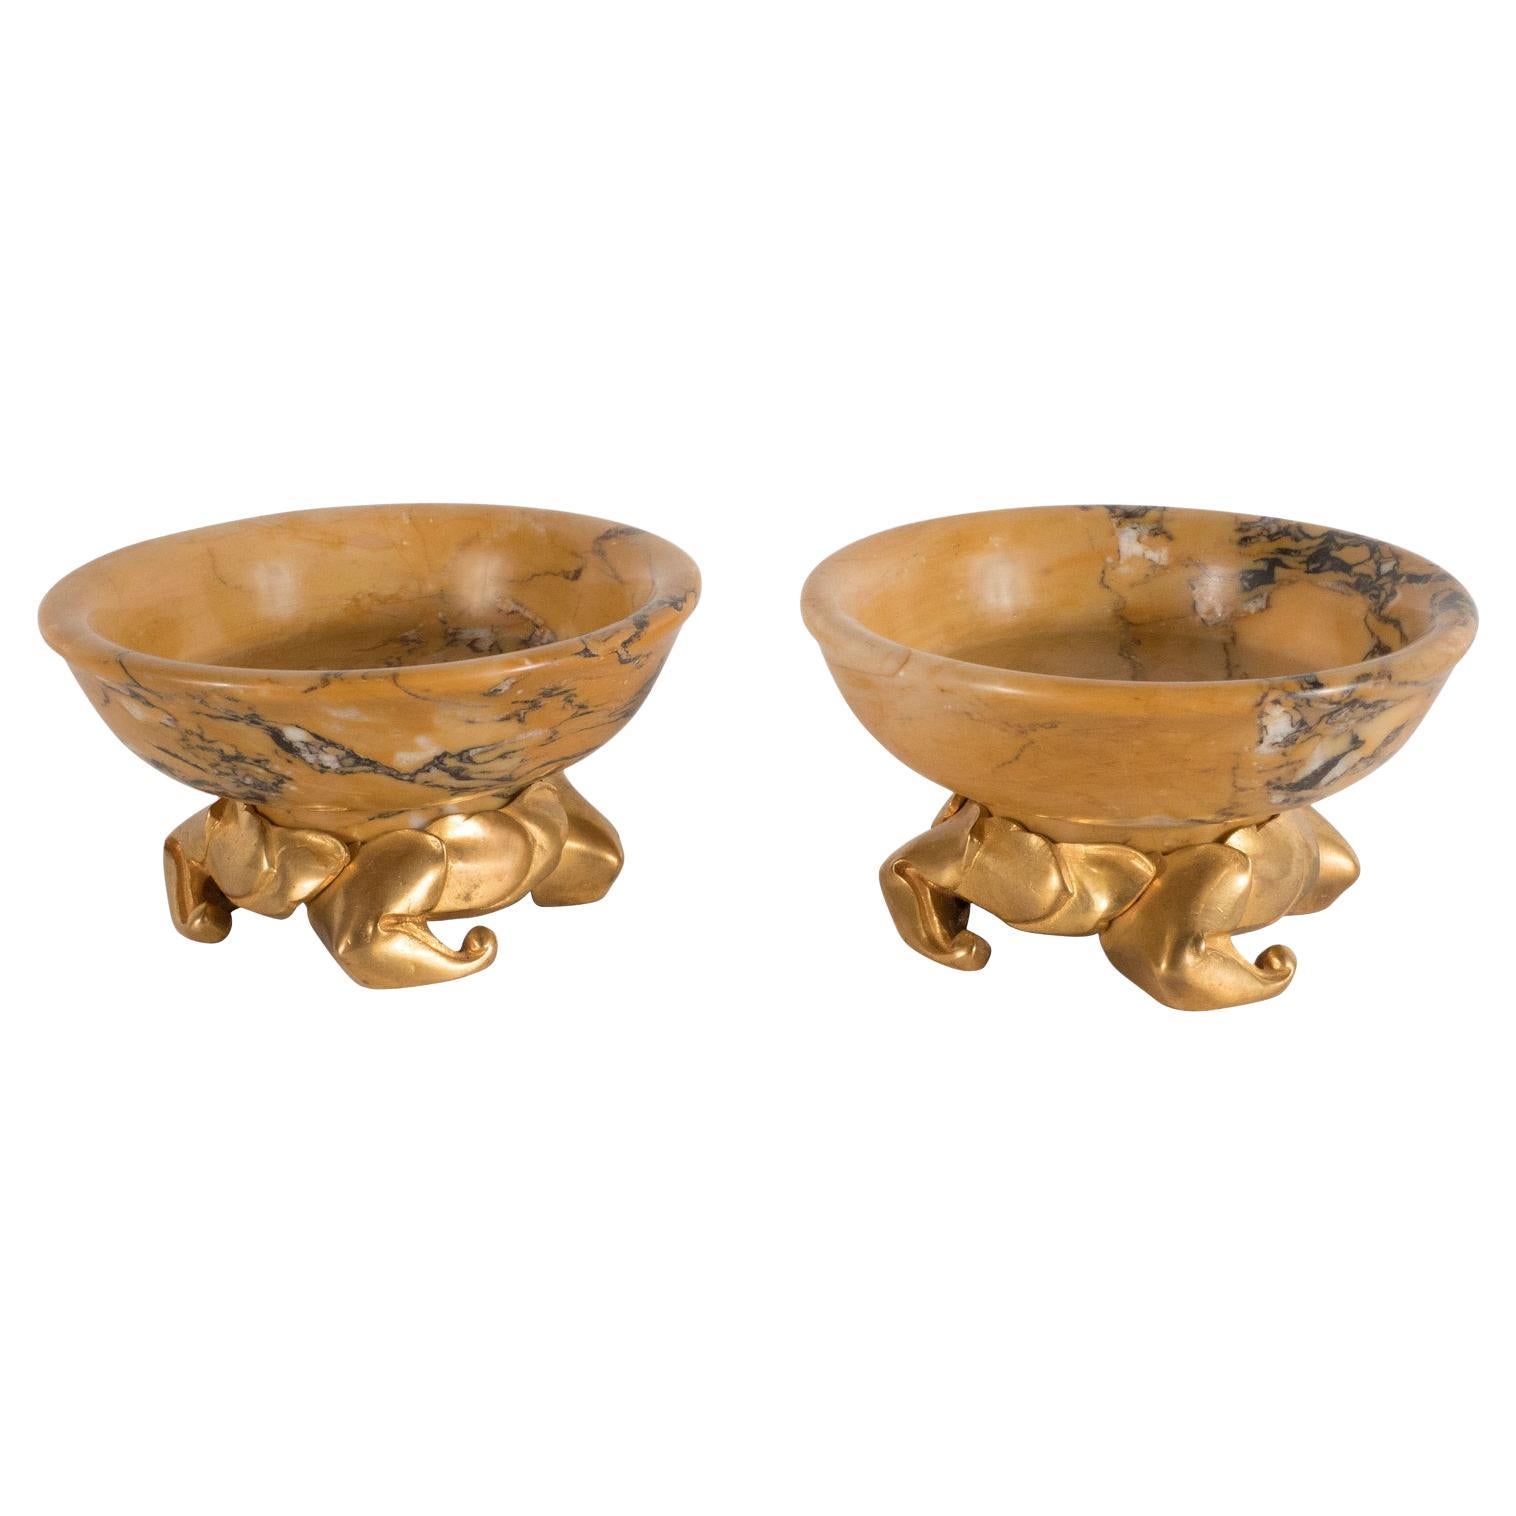 Paire de plats Art Déco en marbre ambré et or avec bases en bronze doré stylisés